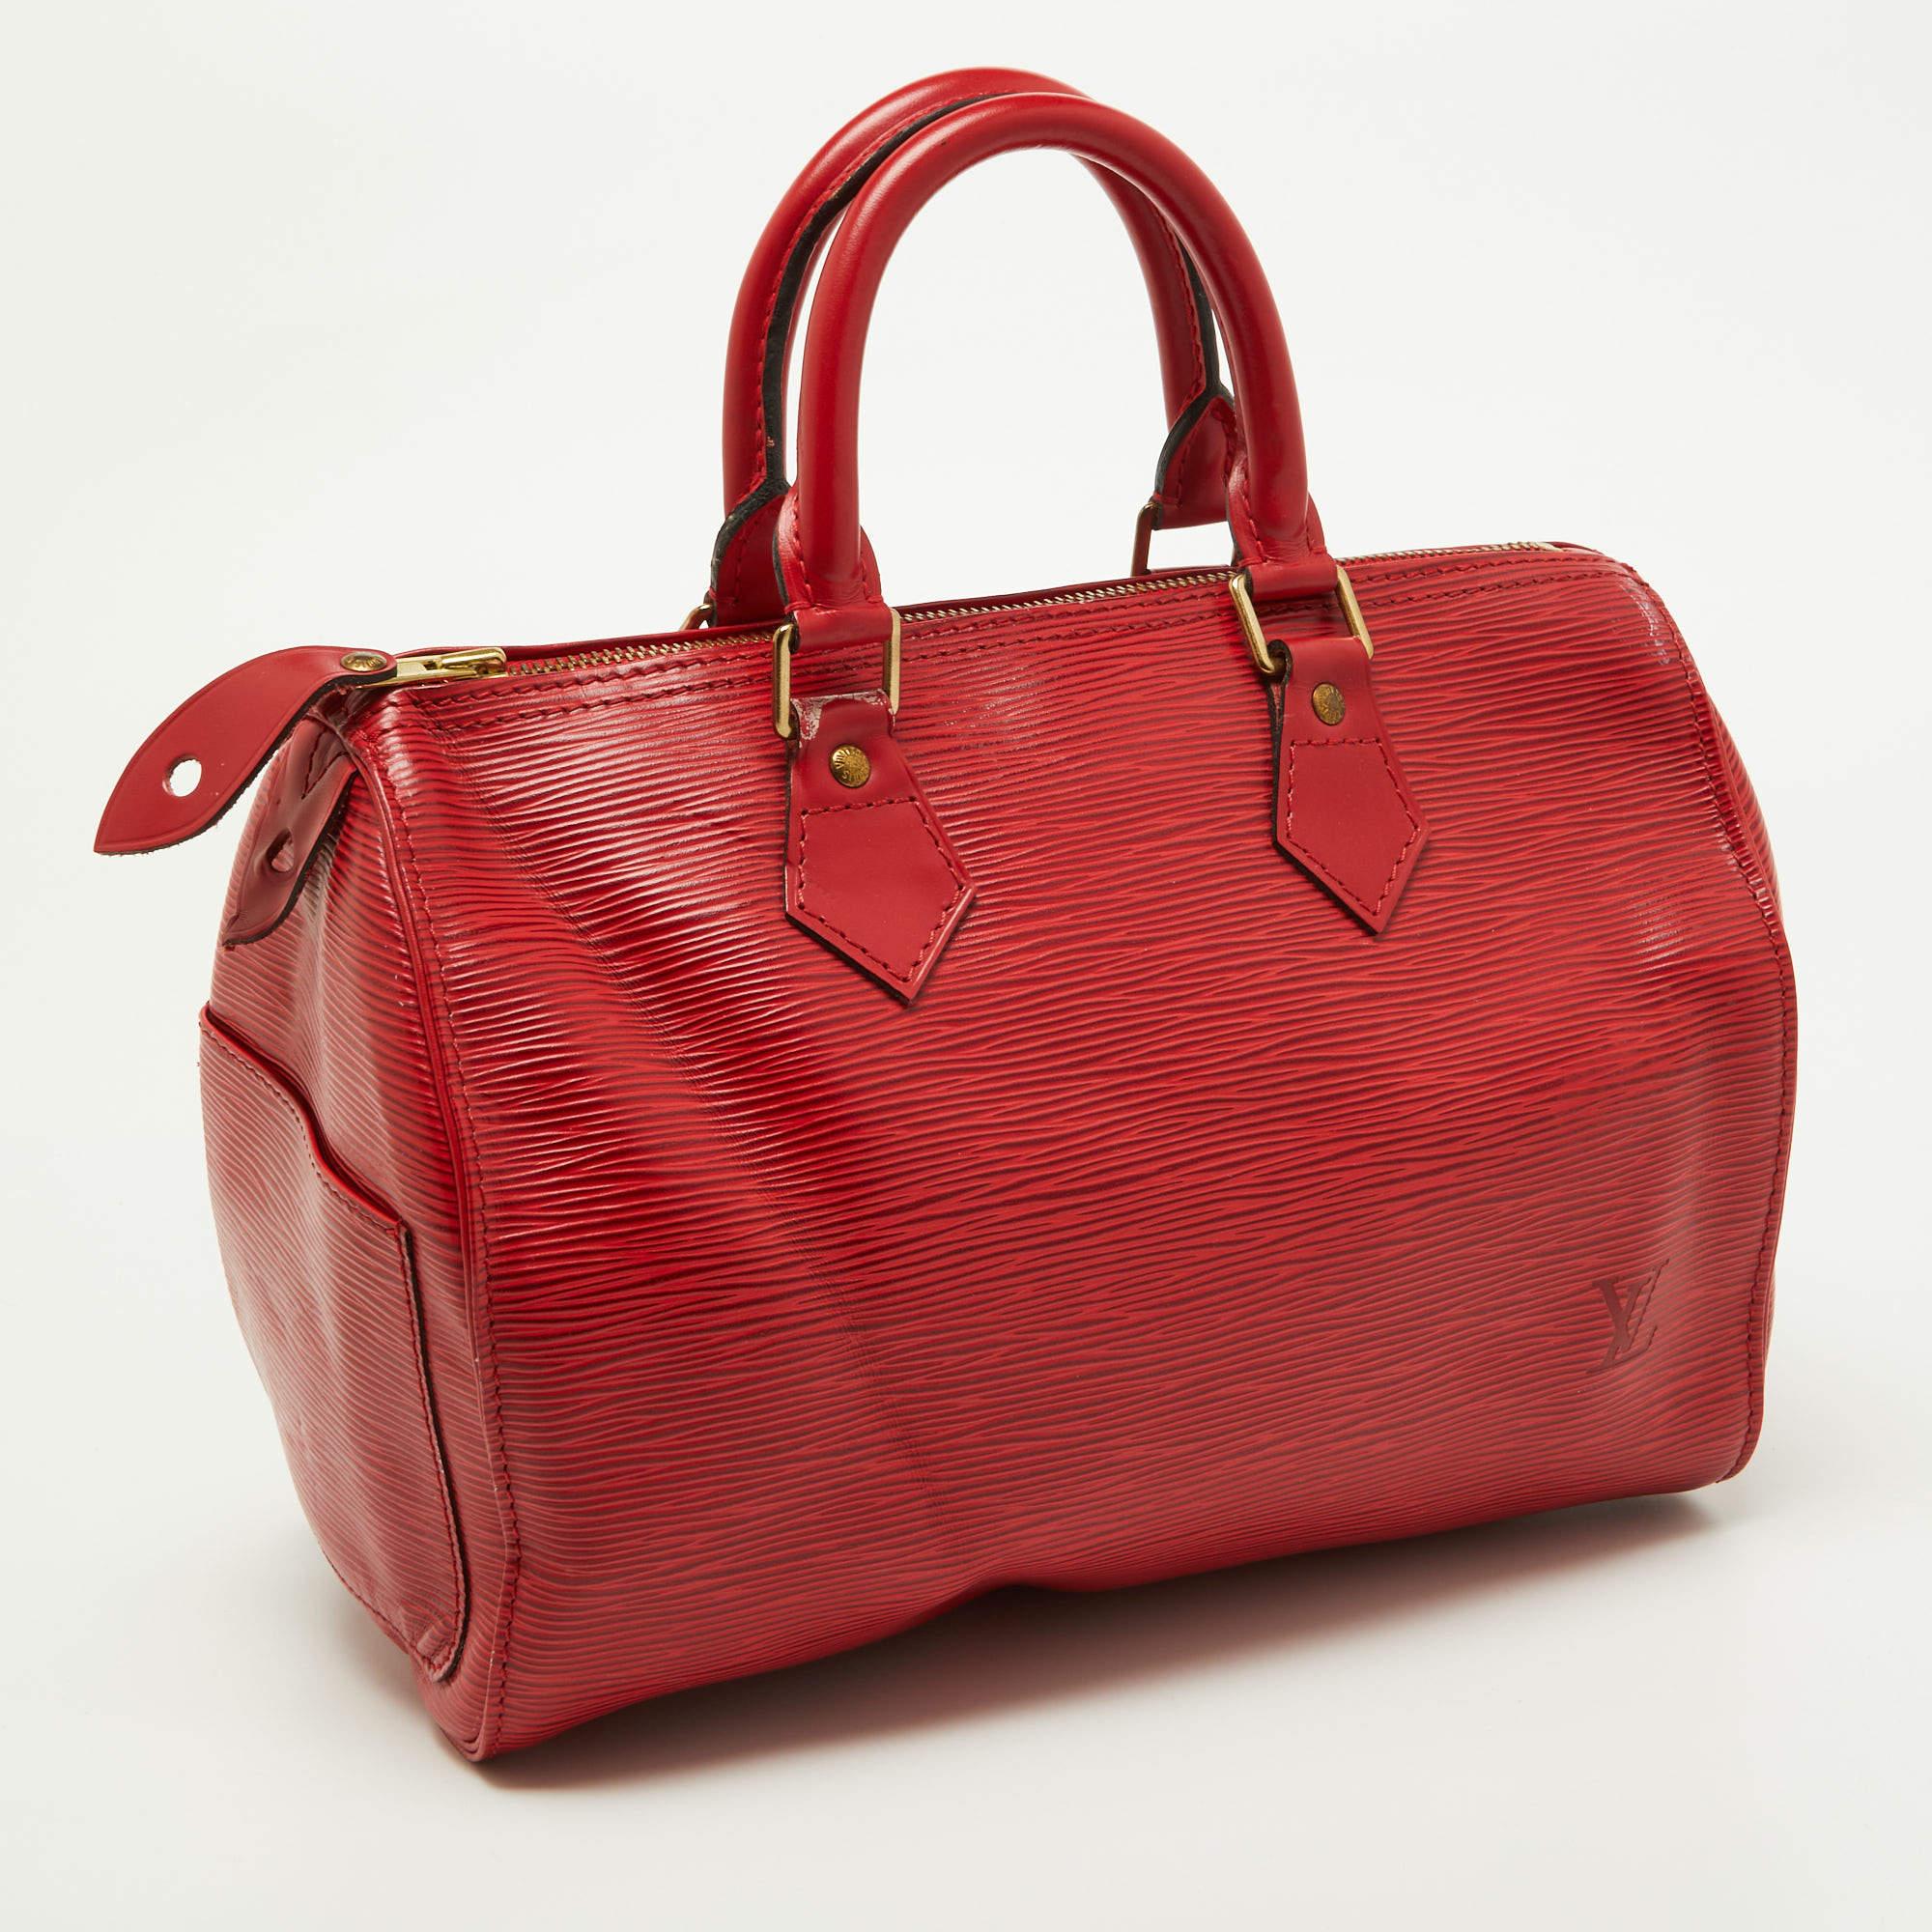 Women's Louis Vuitton Red Epi Leather Speedy 25 Bag